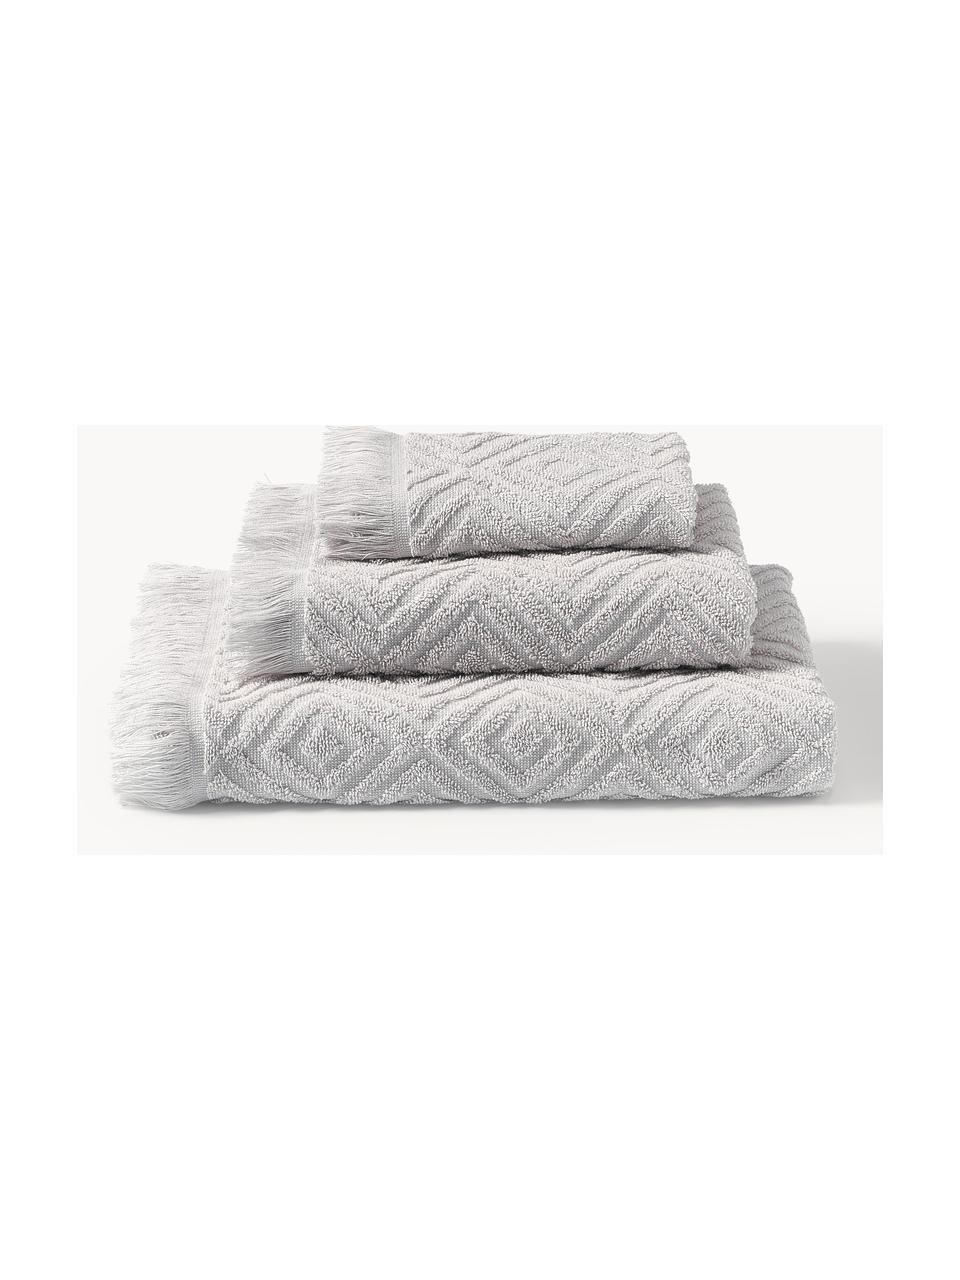 Handdoekenset Jacqui met hoog-laag patroon, in verschillende setgroottes, Lichtgrijs, set van 4 (handdoek & douchehanddoek)